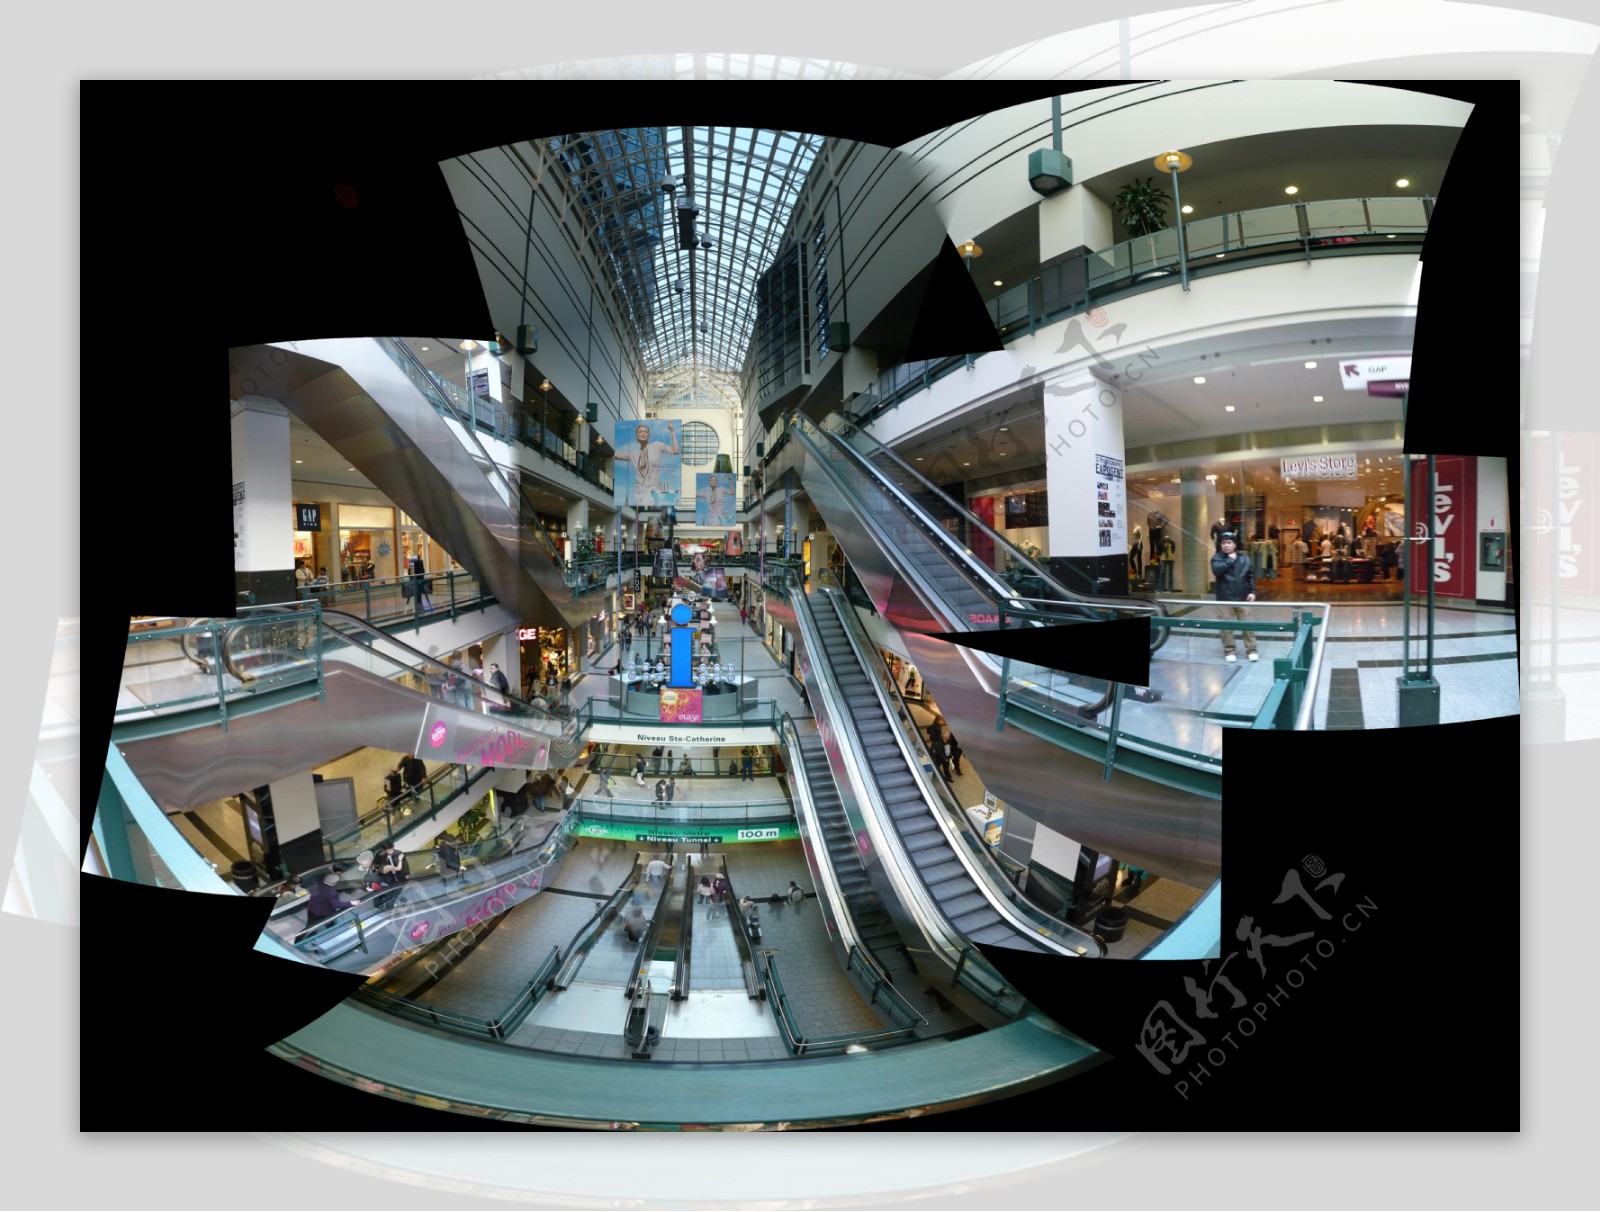 蒙特利尔伊顿购物中心内景图片